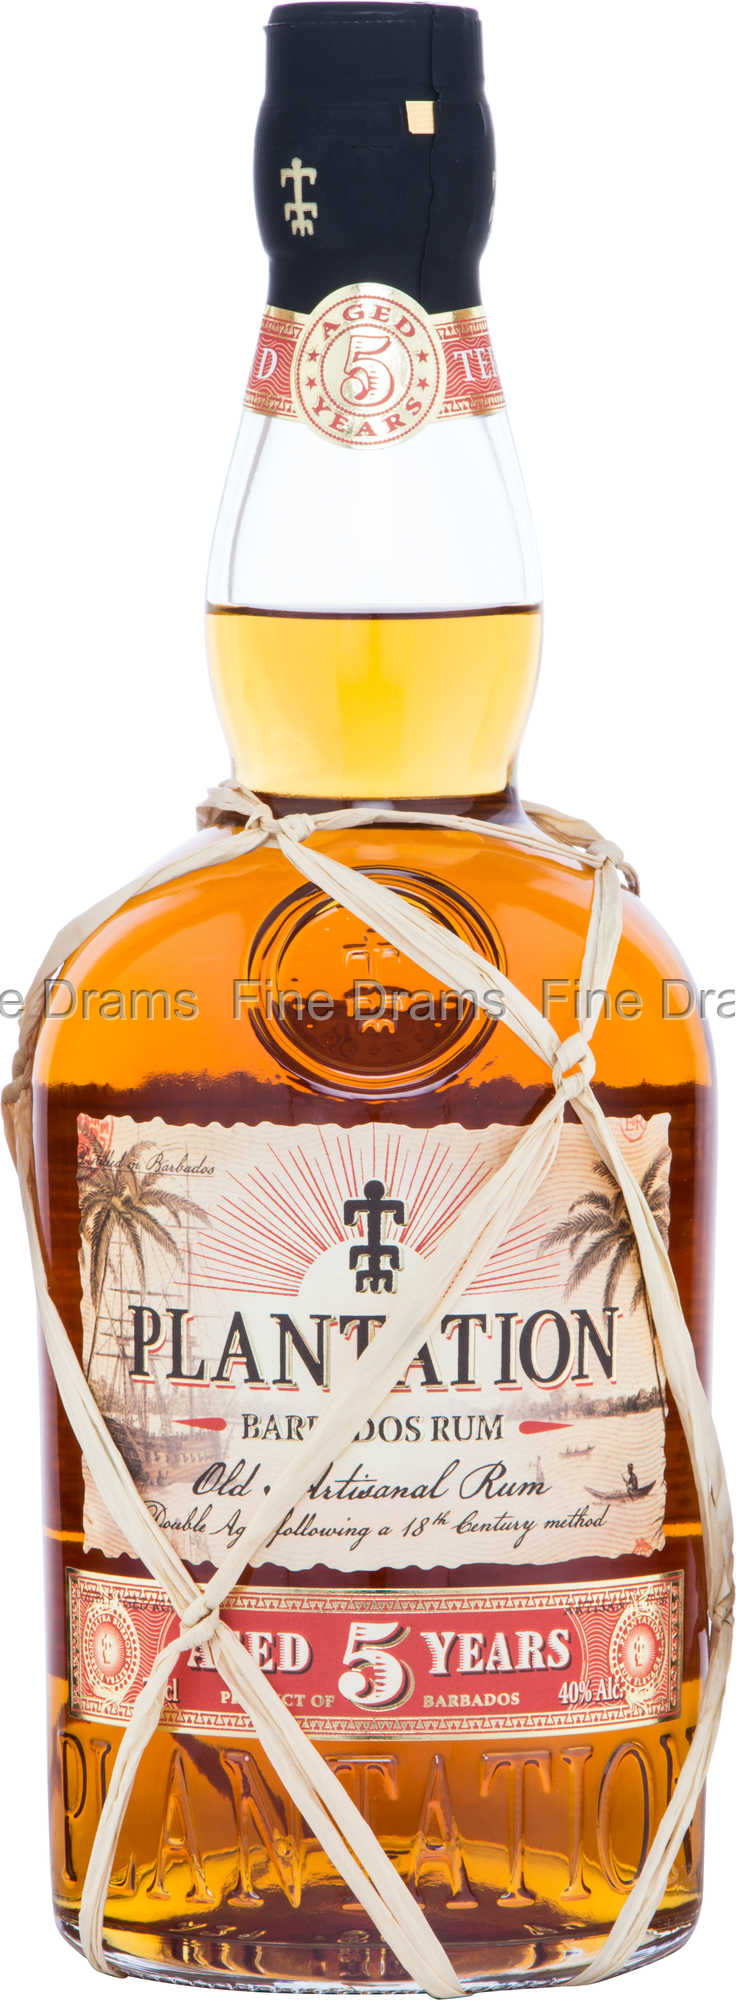 Plantation Barbados Rum 5 Year Old